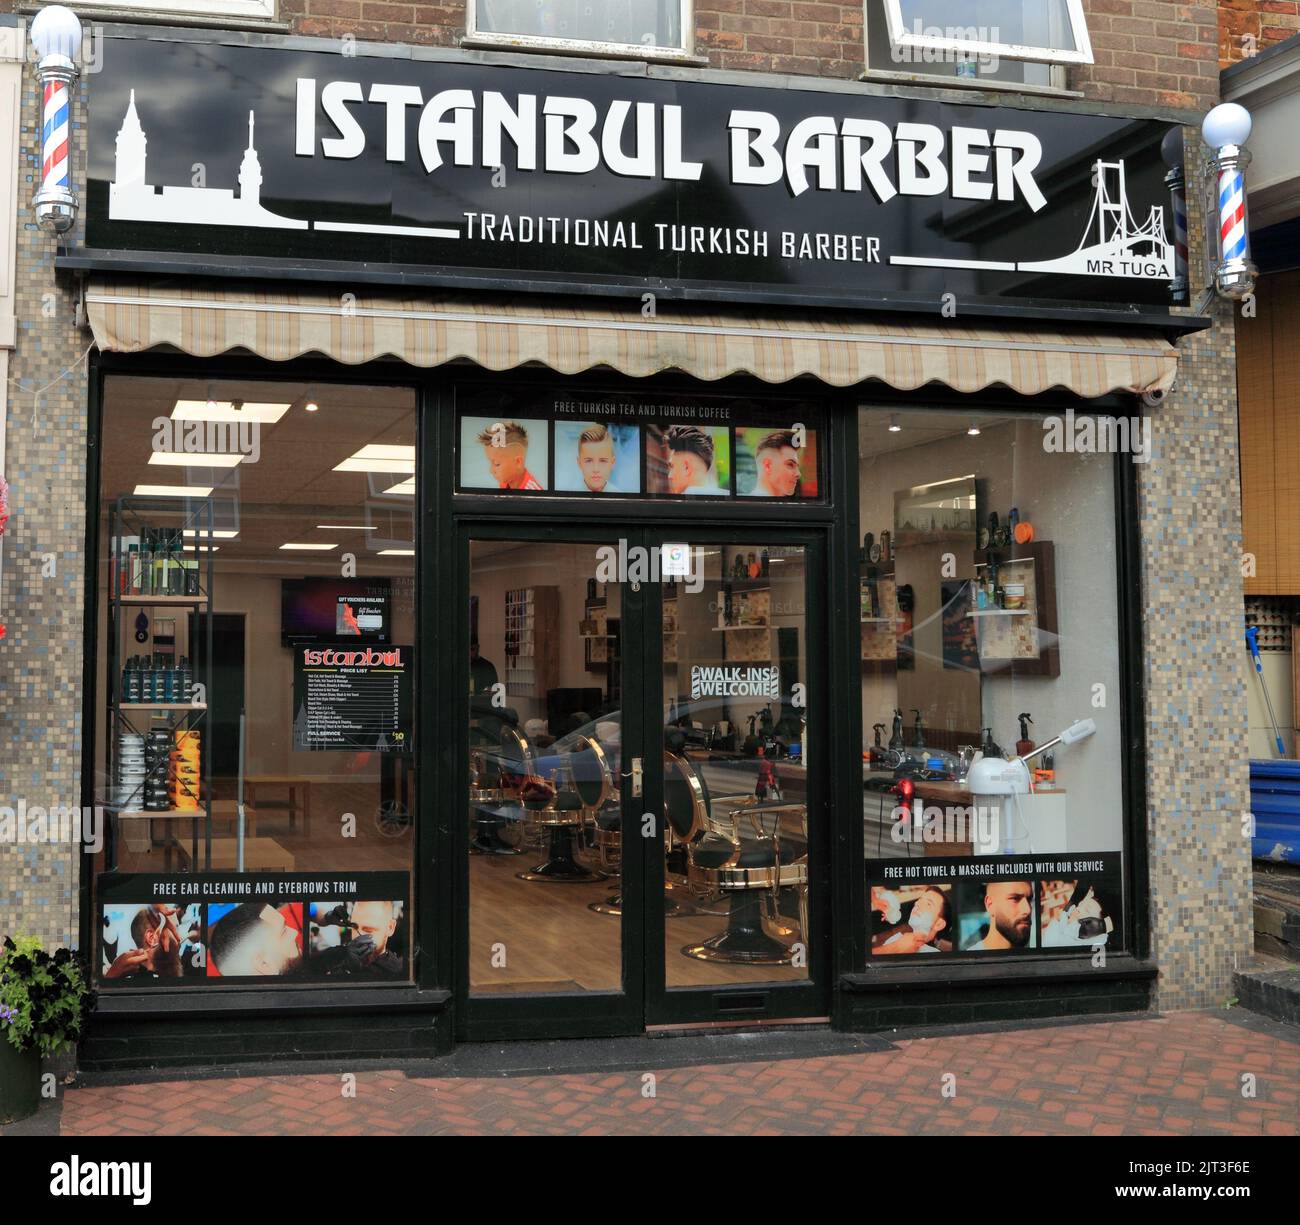 Istanbul Barber, Friseursalon, Geschäft, traditionelle türkische Küche, Hunstanton, Norfolk, England Stockfoto